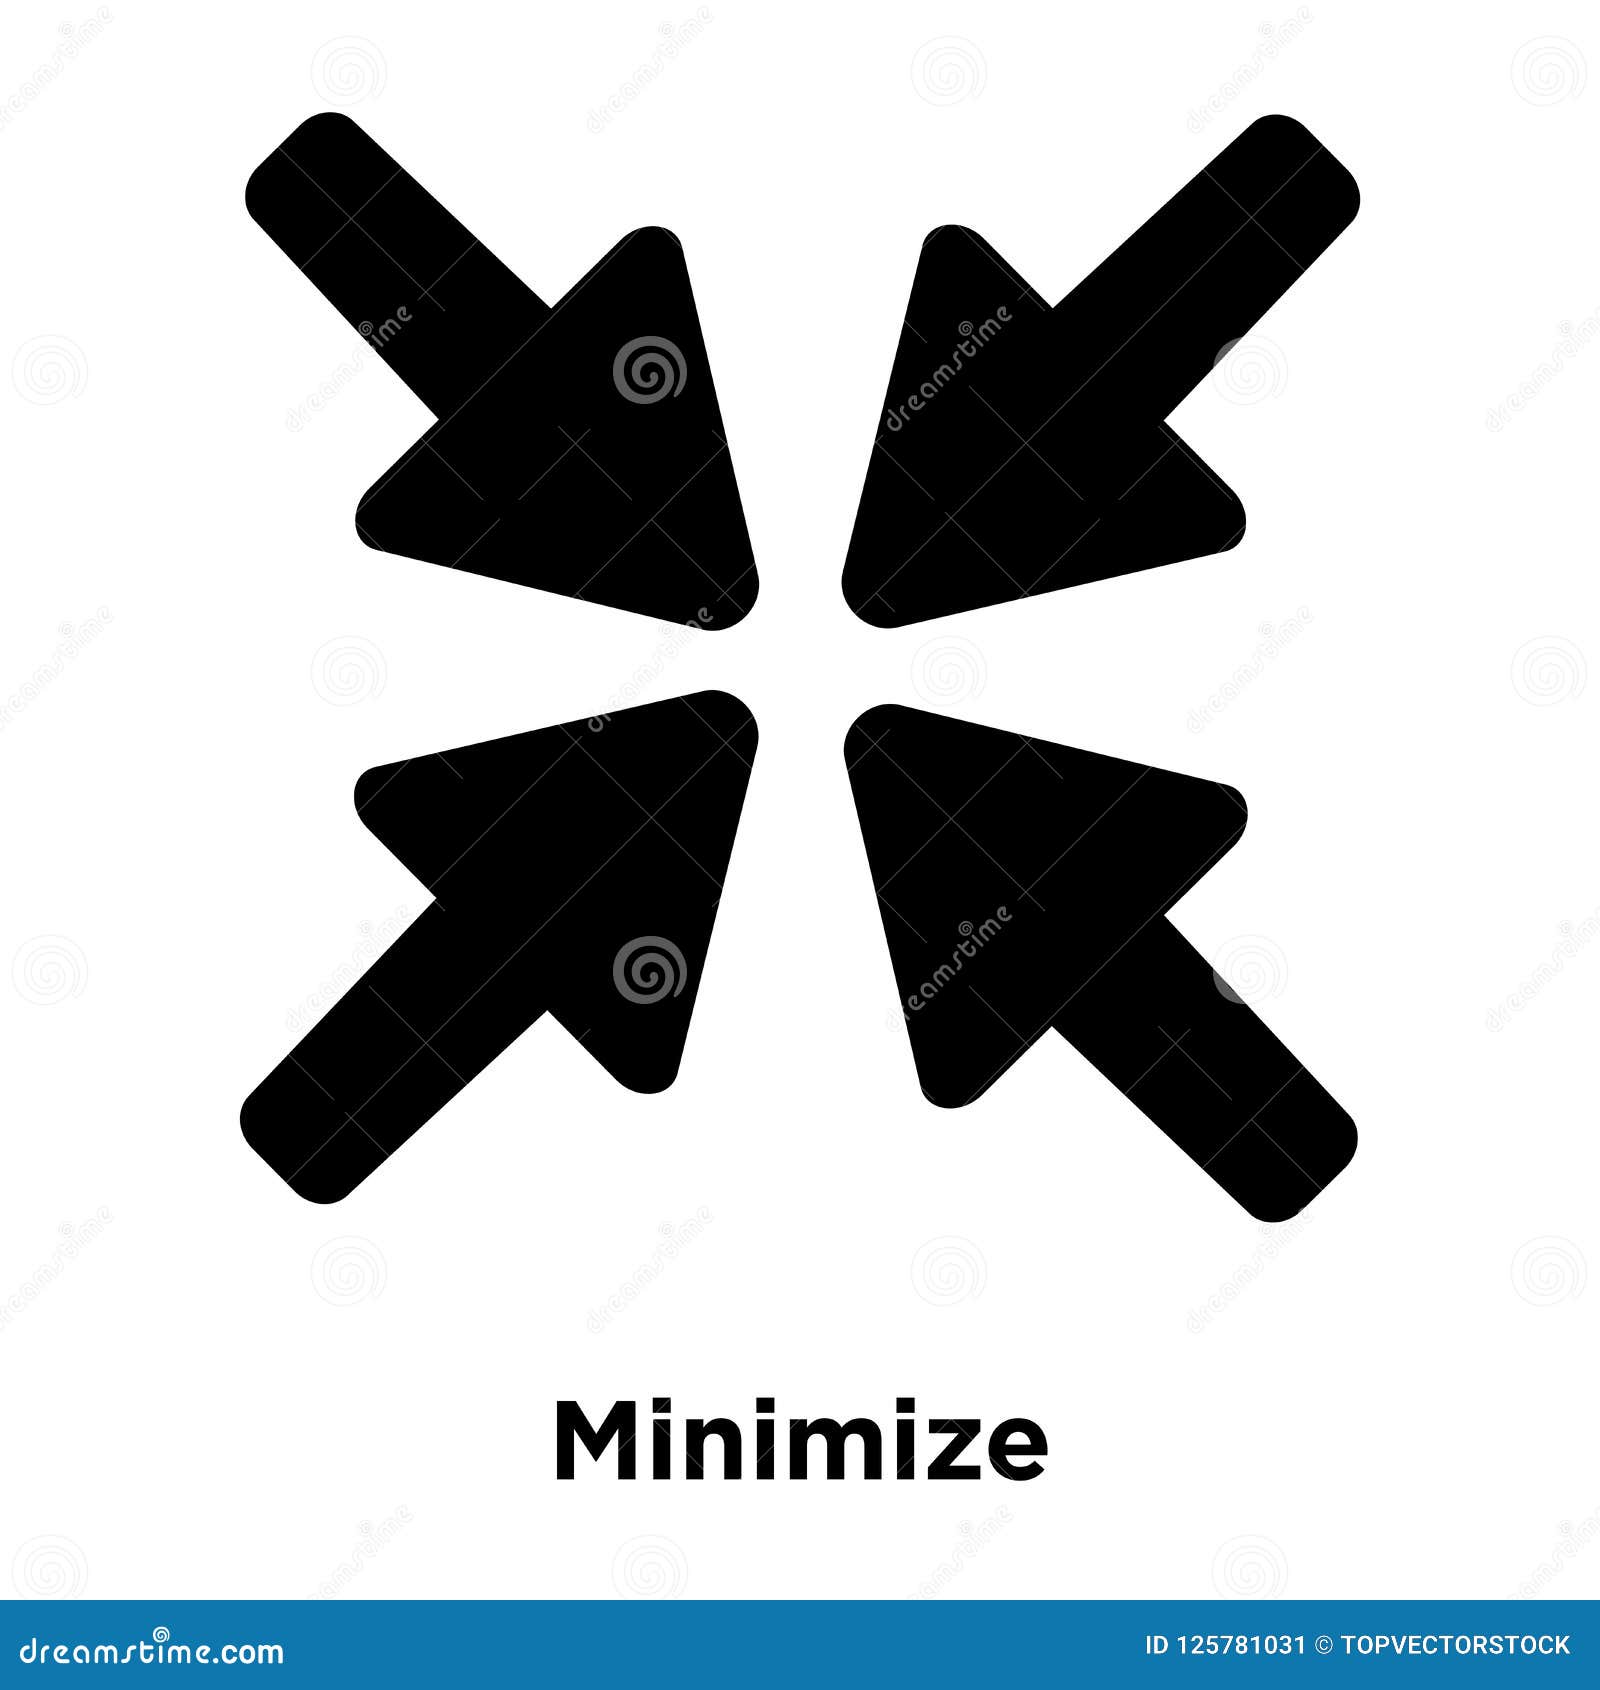 minimize icon   on white background, logo concept